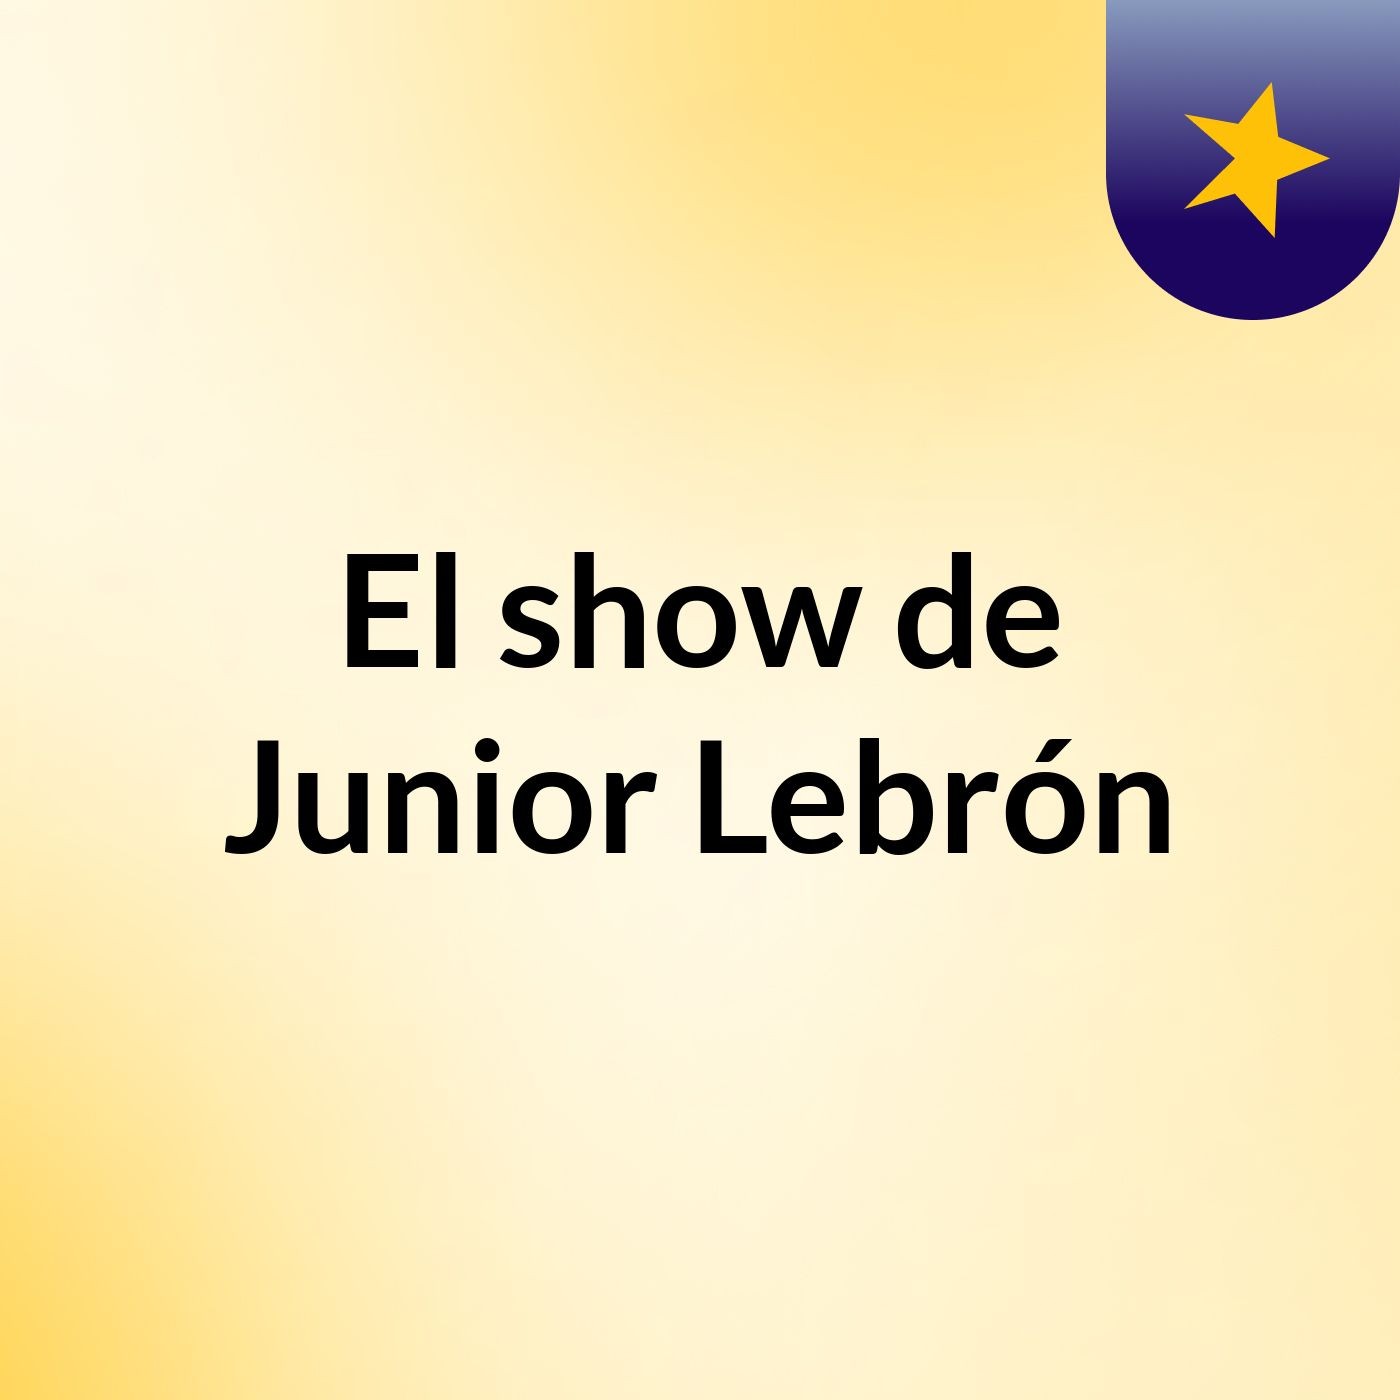 El show de Junior Lebrón